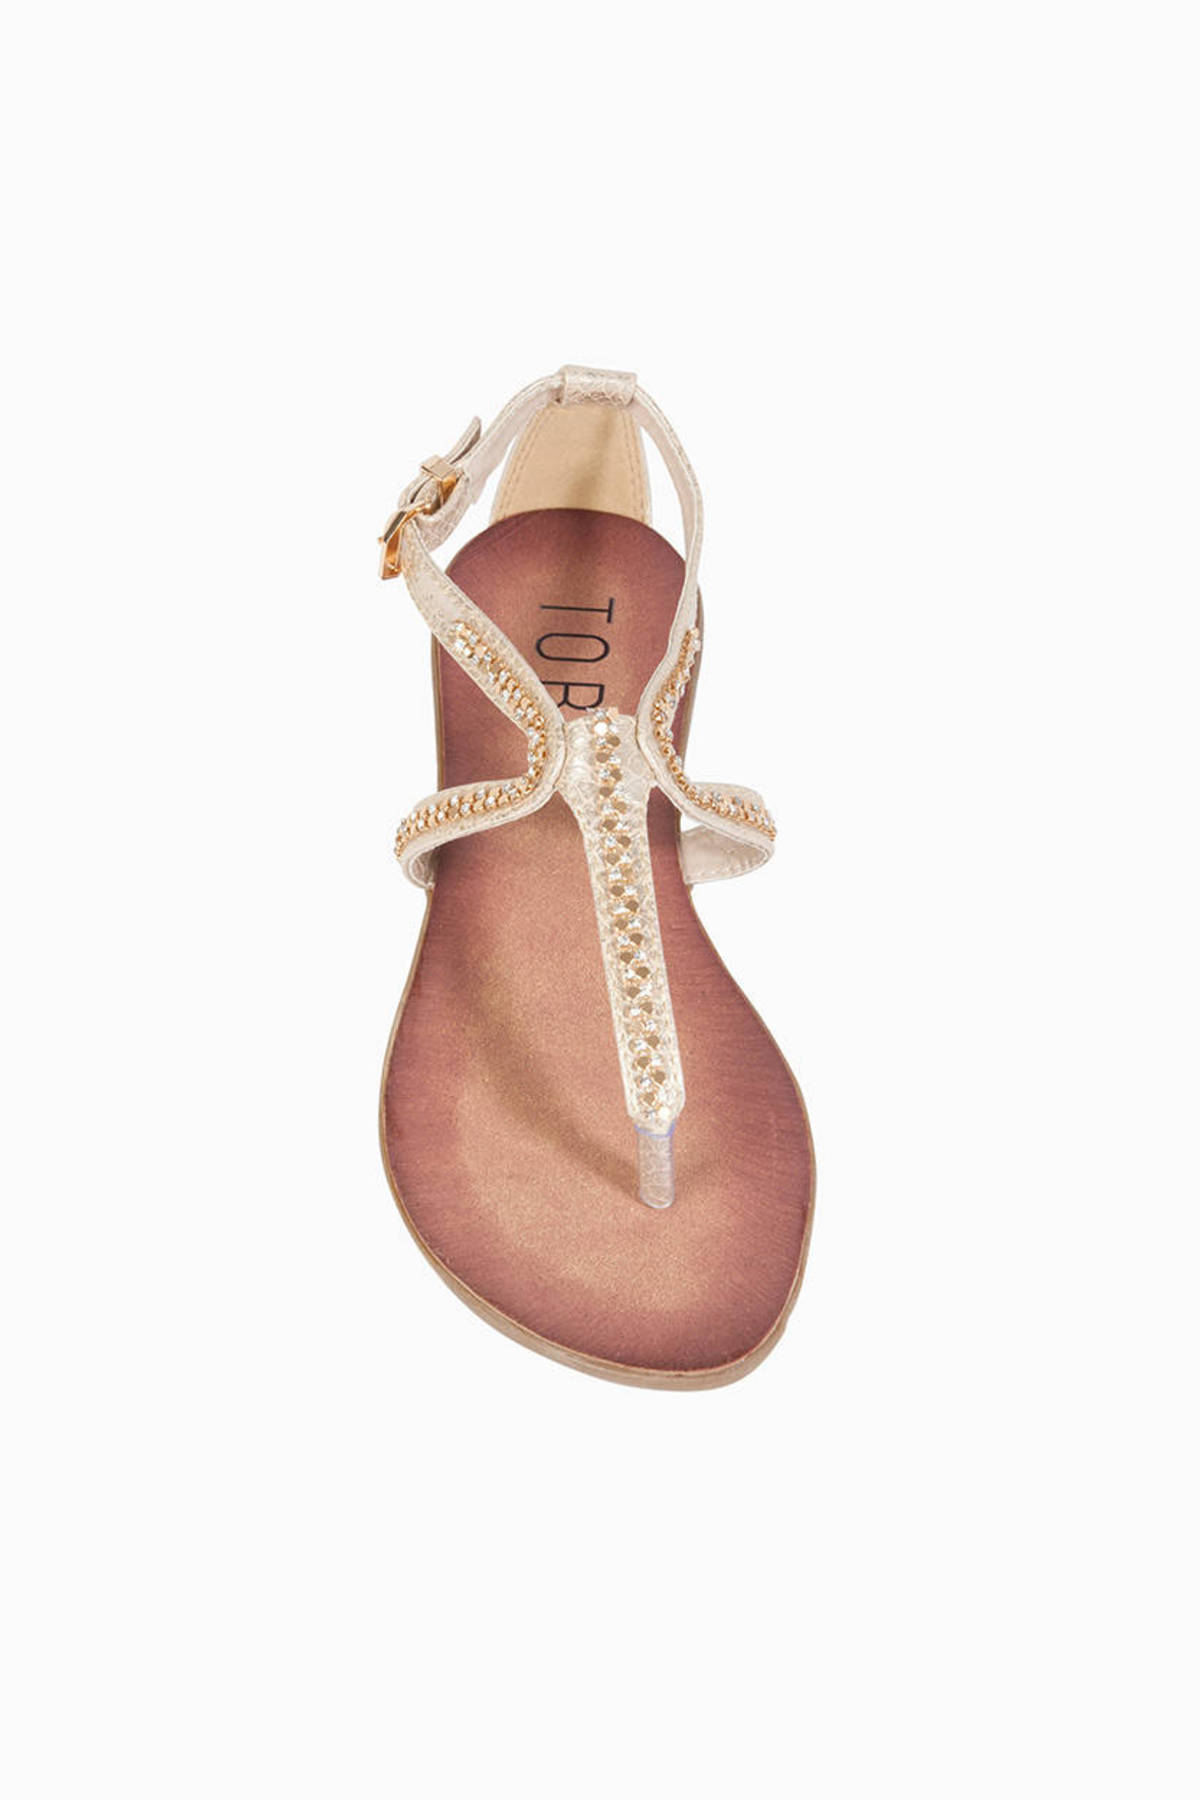 June Sandals in Taupe - $54 | Tobi US